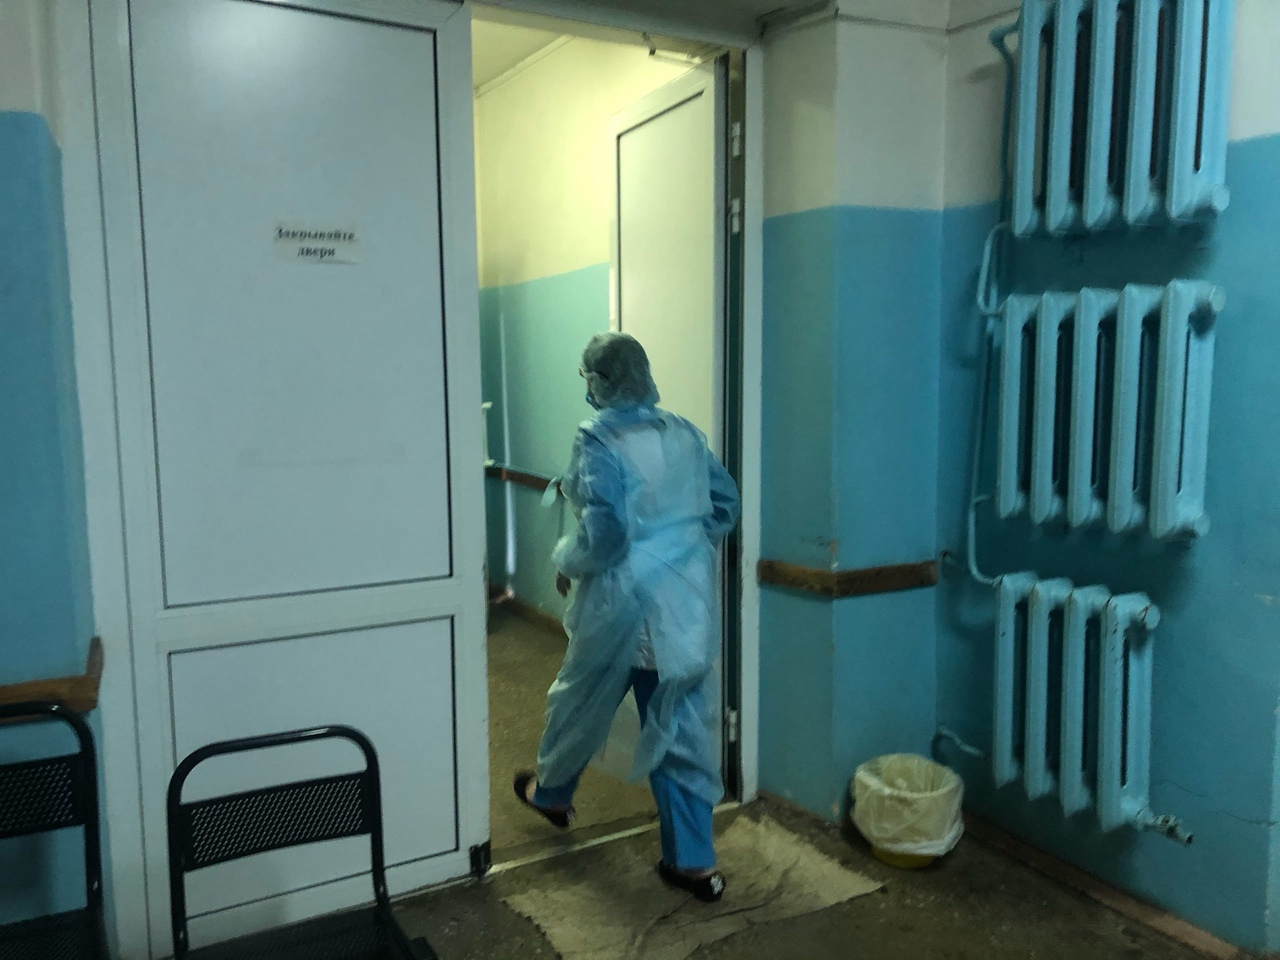 42 жертвы вируса: оперштаб в Ярославле озвучил новые цифры по коронавирусу